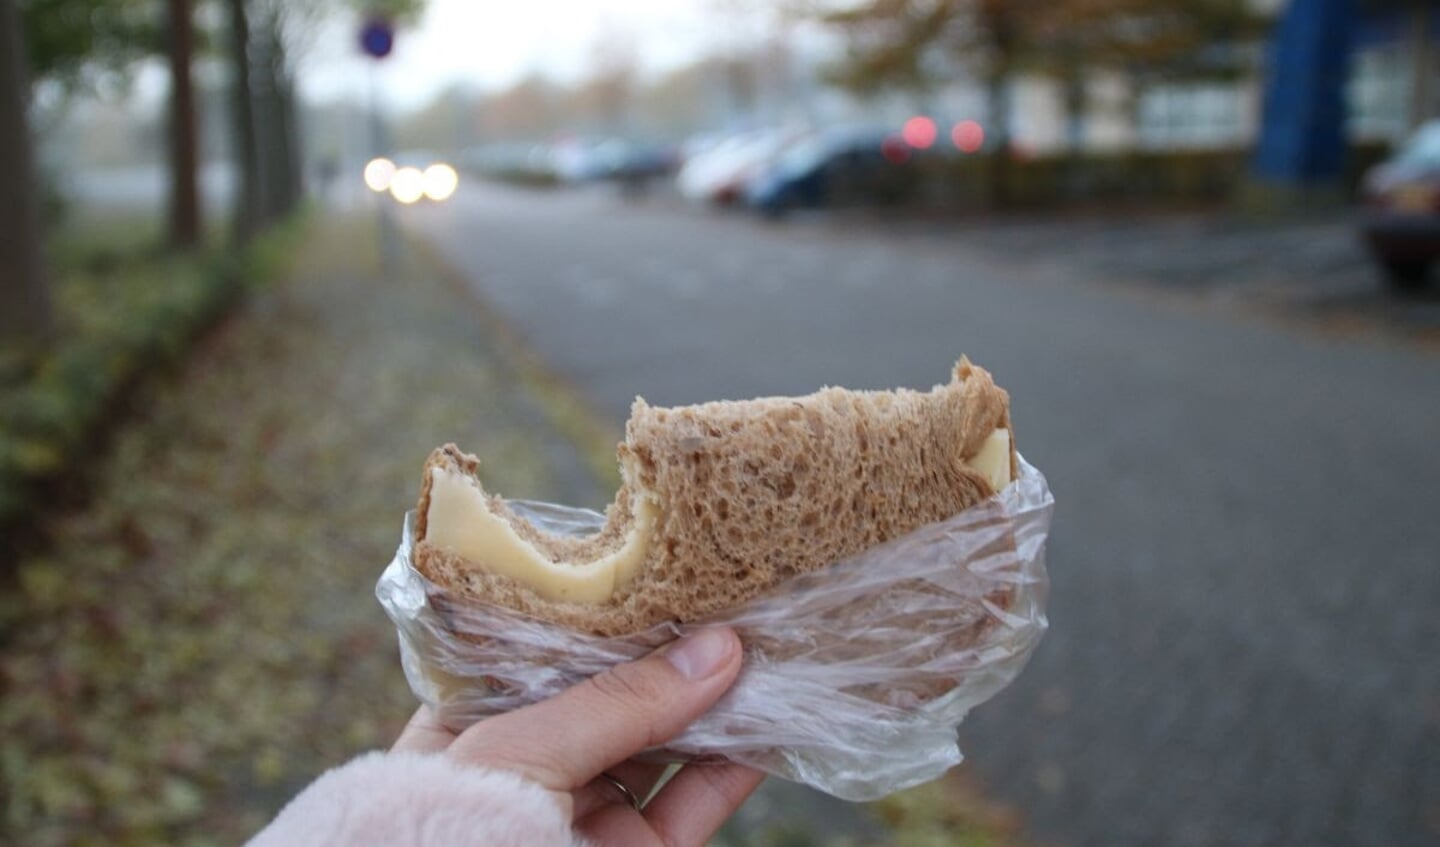 Een broodje kaas uit zo’n zakje, omdat ik het best typisch vind dat wij Nederlanders zo vaak eten terwijl we onderweg zijn. We nemen er ook de tijd niet voor. In Marokko is mijn lunch een heel gerecht waar je voor gaat zitten en de tijd voor neemt. Ik heb een broodje kaas gefotografeerd omdat mijn m